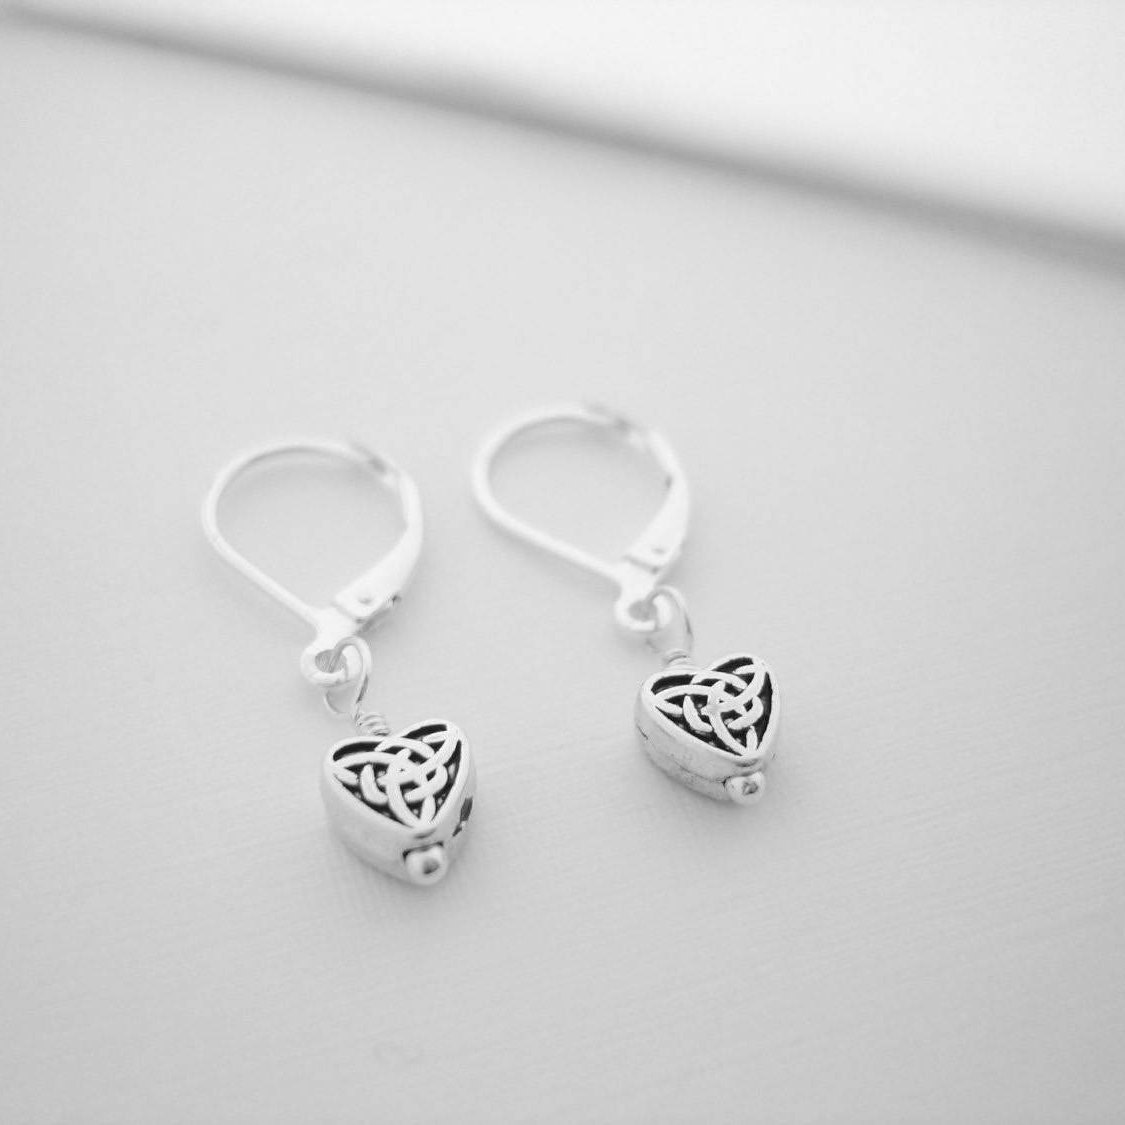 TINY CELTIC HEART Earrings Celtic Knot Jewelry Irish Gift | Etsy